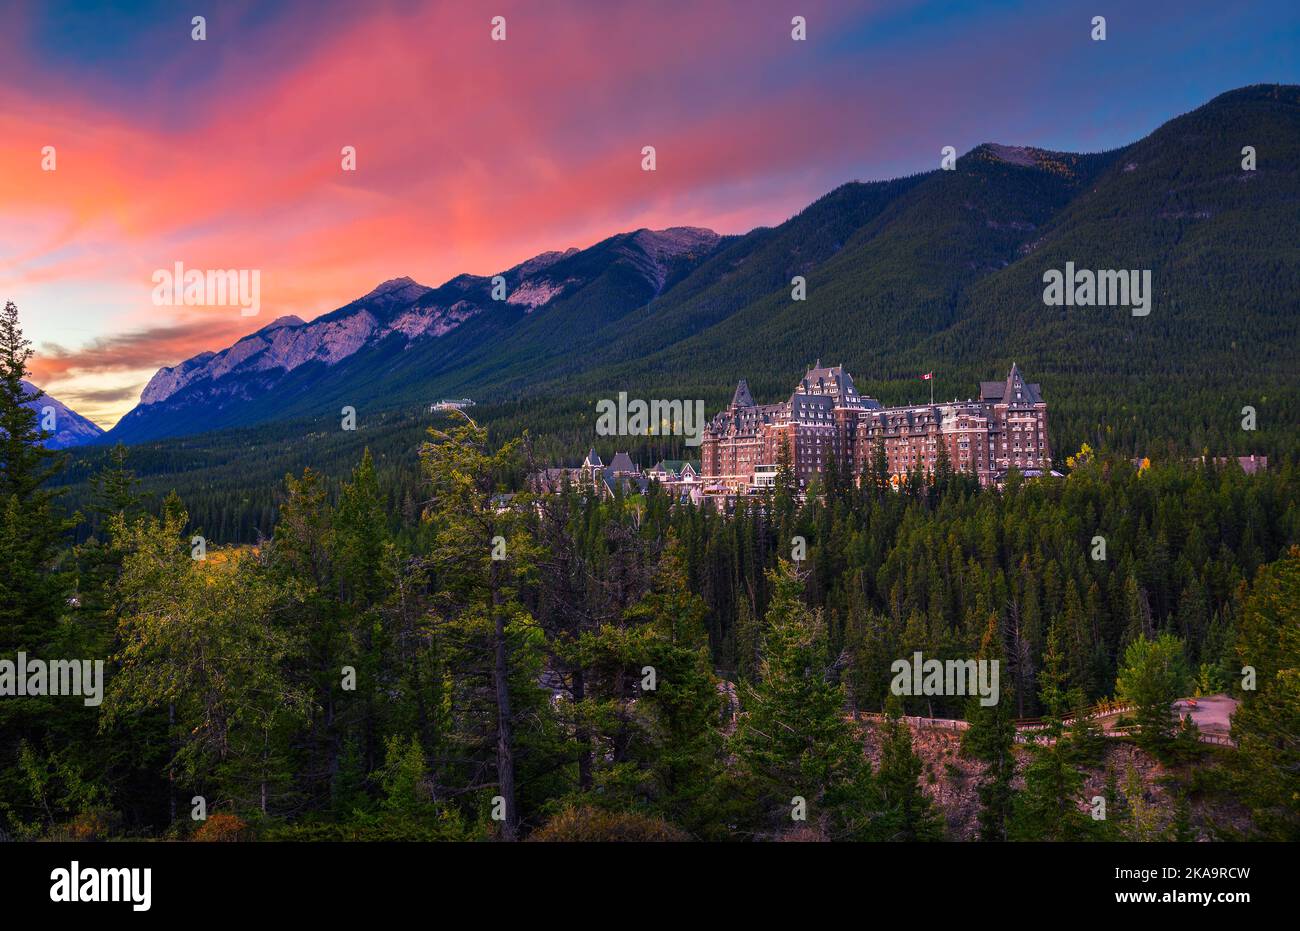 Lever de soleil au-dessus de l'hôtel Fairmont Banff Springs à Rocky Mounatins, Canada Banque D'Images